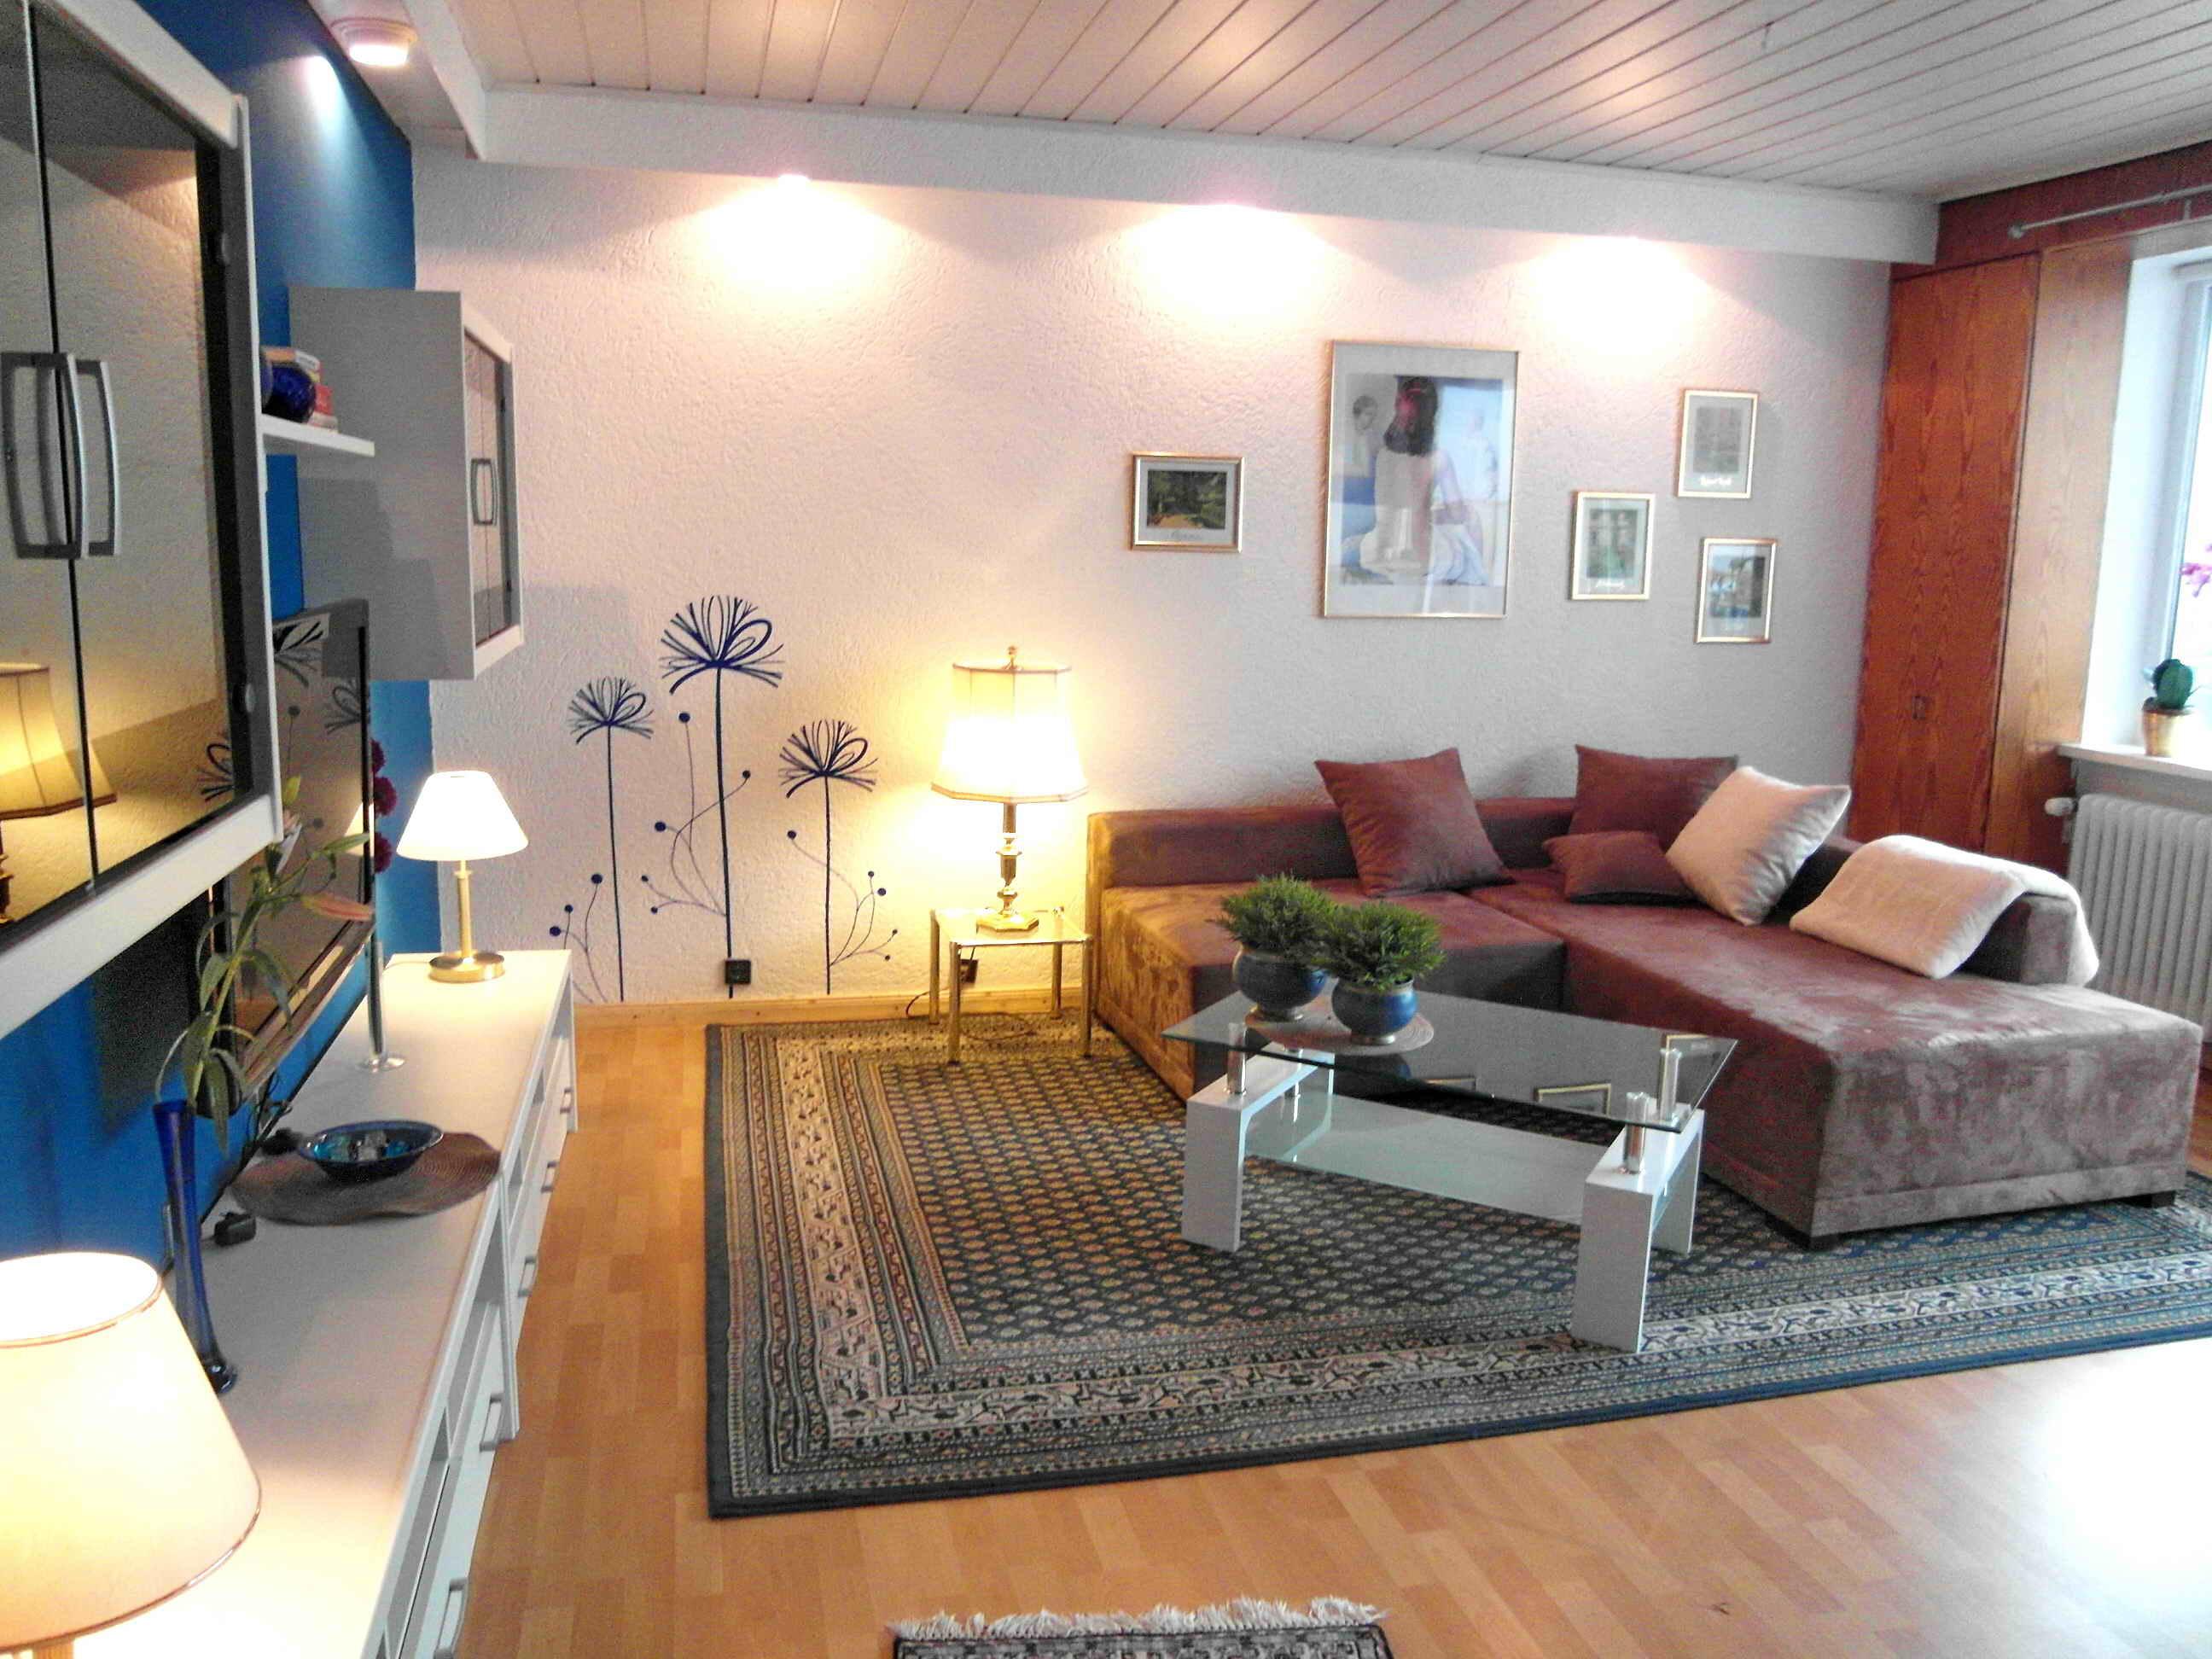 Wohnzimmer #couchtisch #ecksofa #sideboard #wandtattoo #weißercouchtisch #glascouchtisch #braunessofa ©artenstein